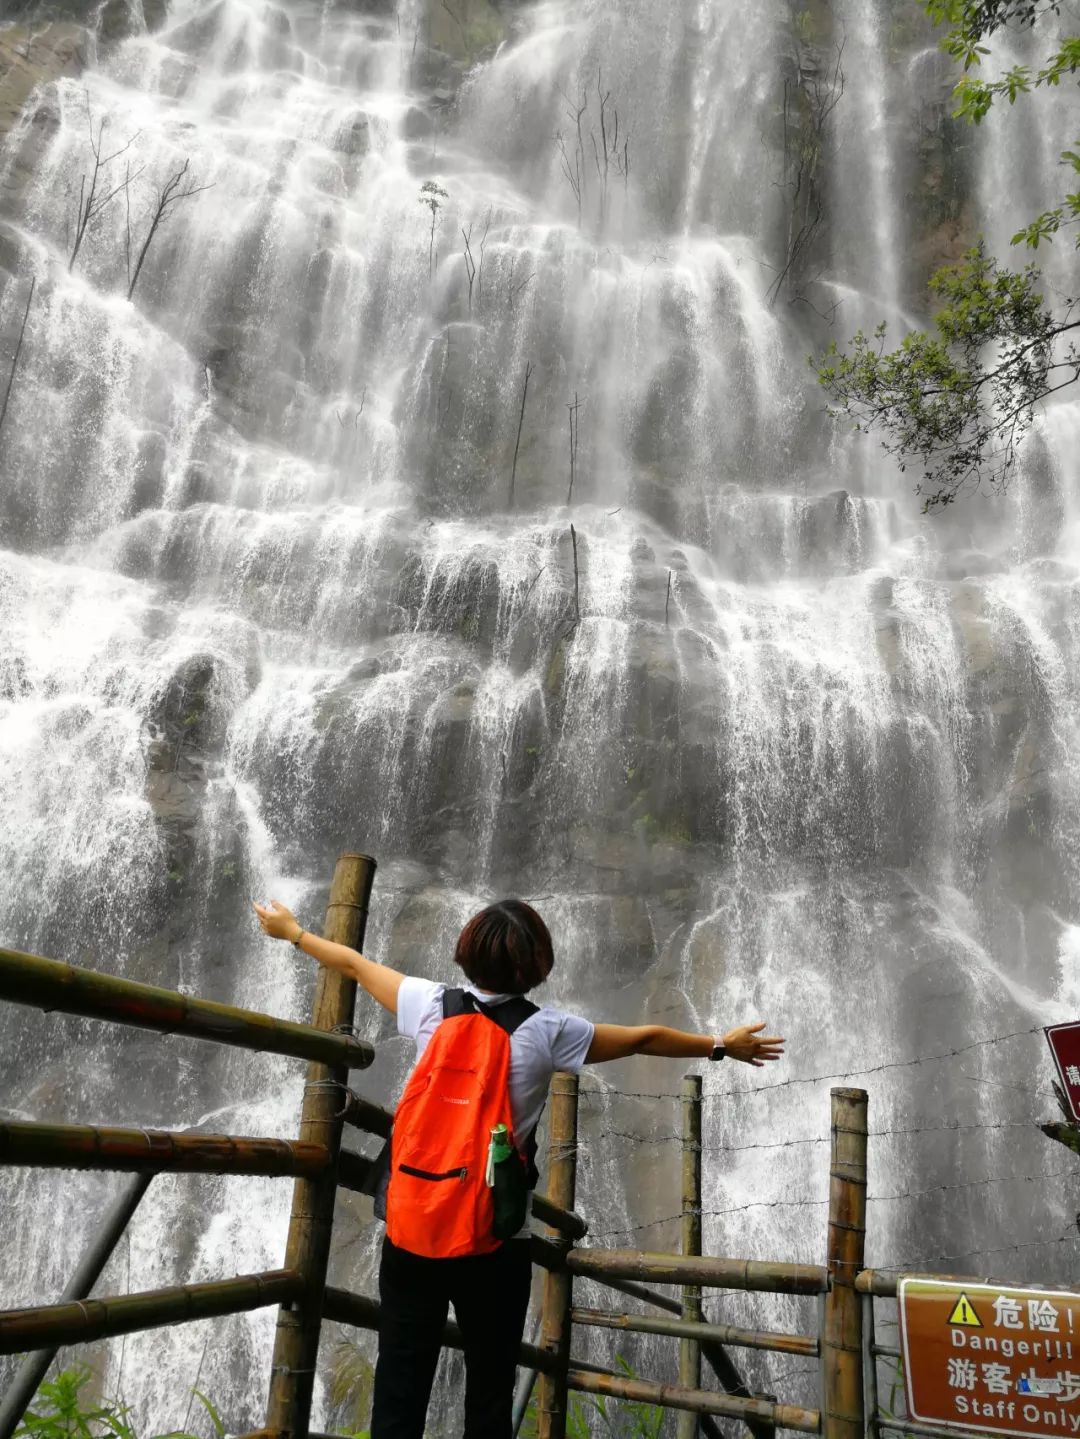 黄果树瀑布算什么!广州竟藏着290米绝美瀑布!堪称避暑